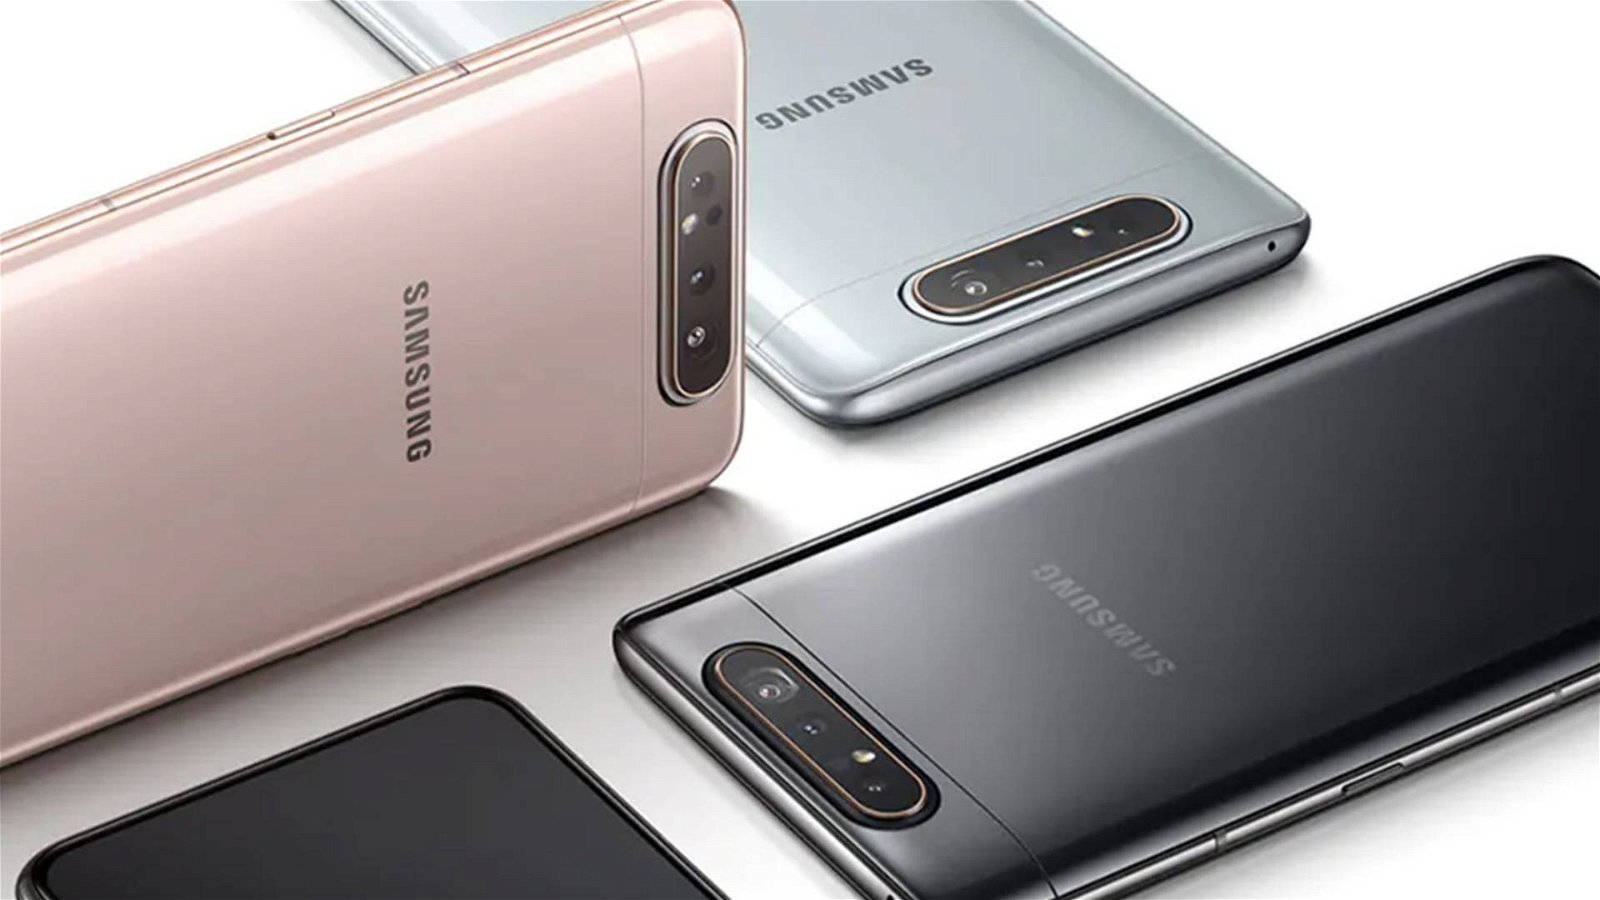 Immagine di Samsung Galaxy A80 recensione: luci e ombre, ma la fotocamera rotante è una ventata di novità